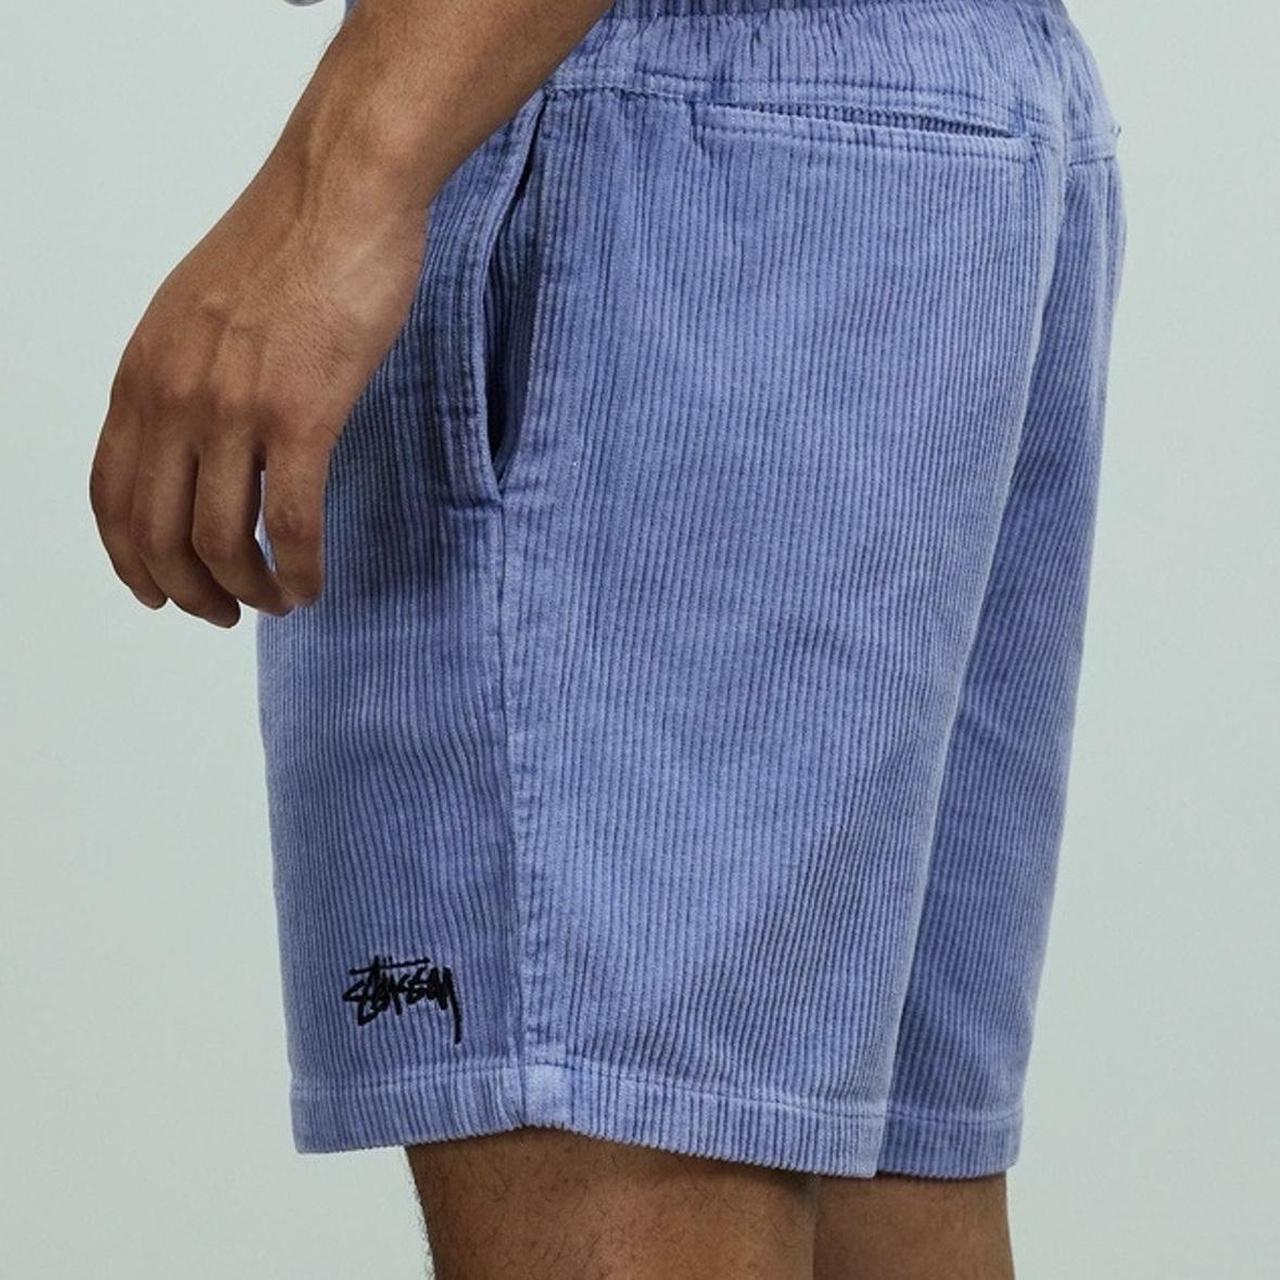 Find] Stussy Corduroy Shorts for Summer : r/FashionReps